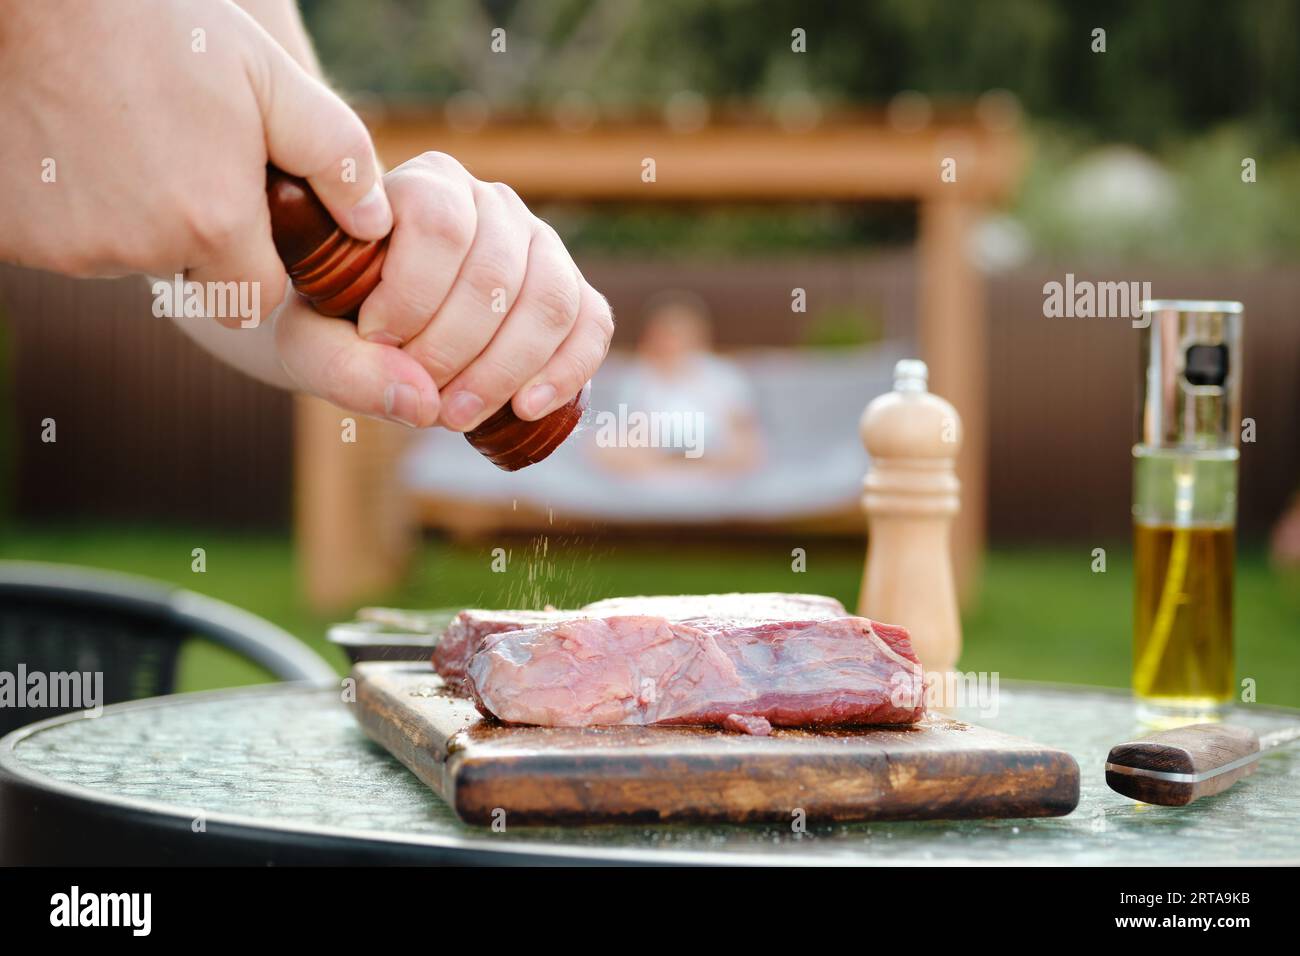 Vista laterale di un uomo irriconoscibile che aggiunge pepe alla bistecca di manzo crudo, che prepara succose carni alla griglia per cena con sua moglie Foto Stock